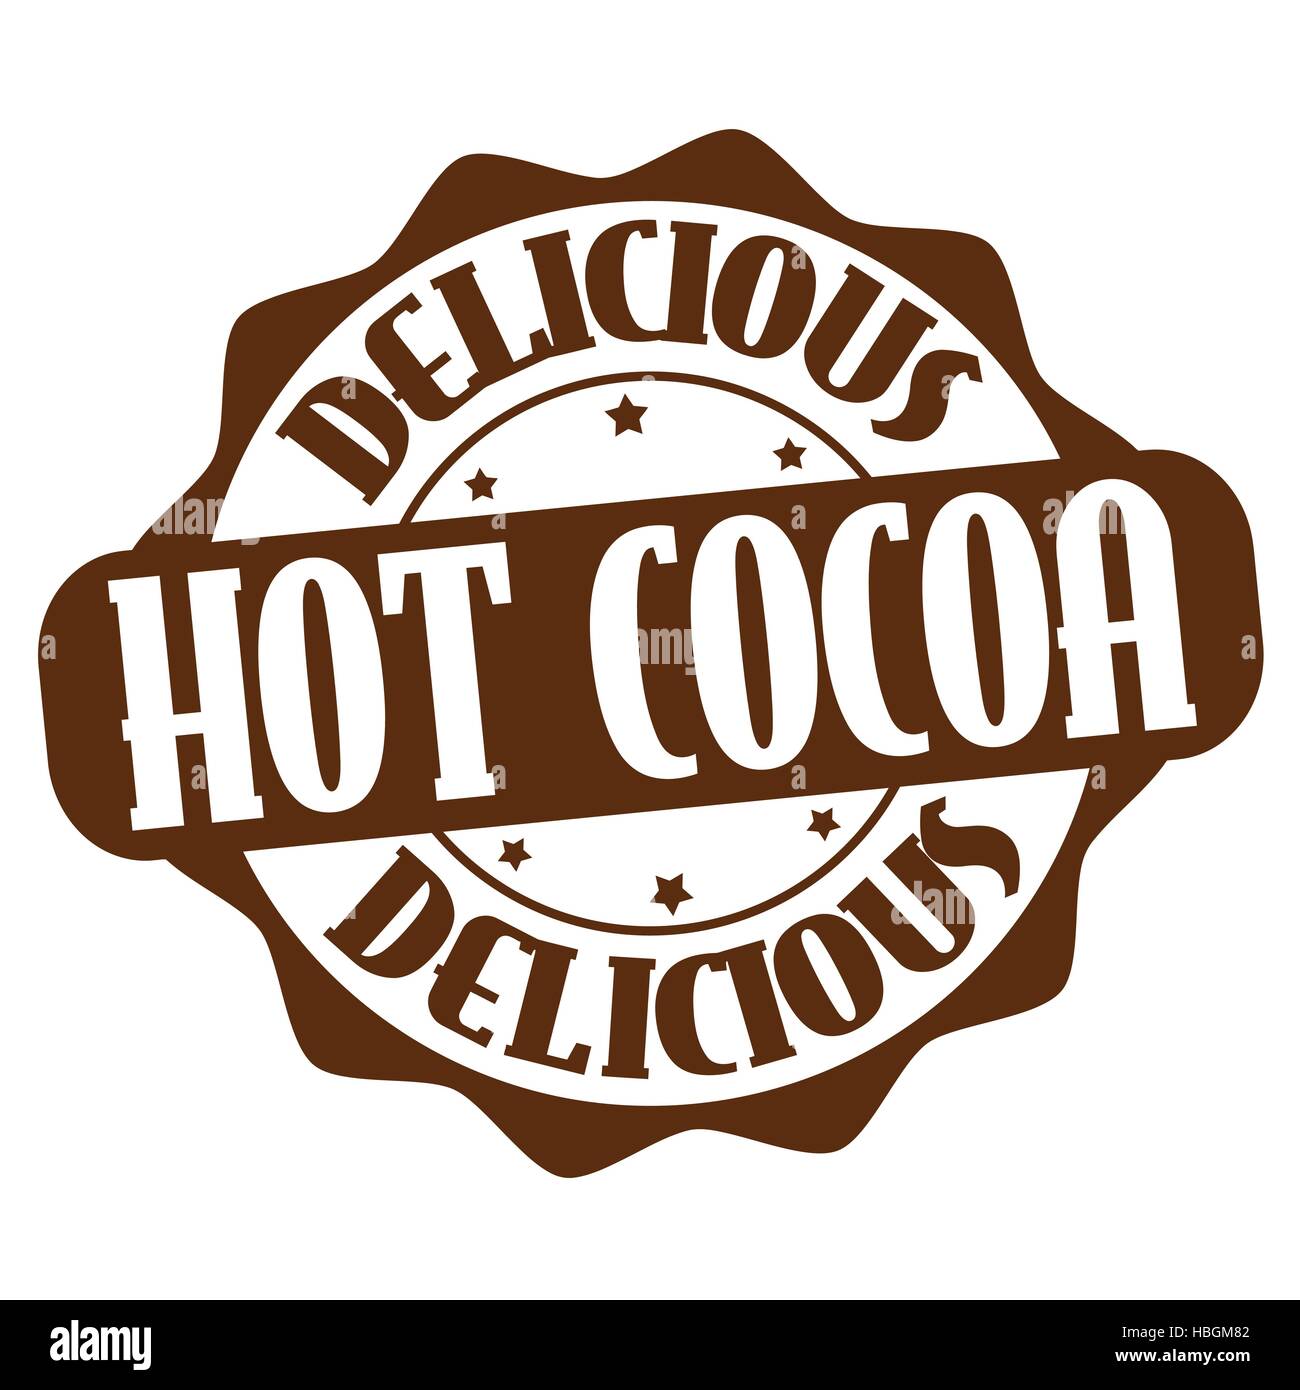 Heißer Kakao Grunge Stempel auf weißem Hintergrund, Vektor-illustration Stock Vektor